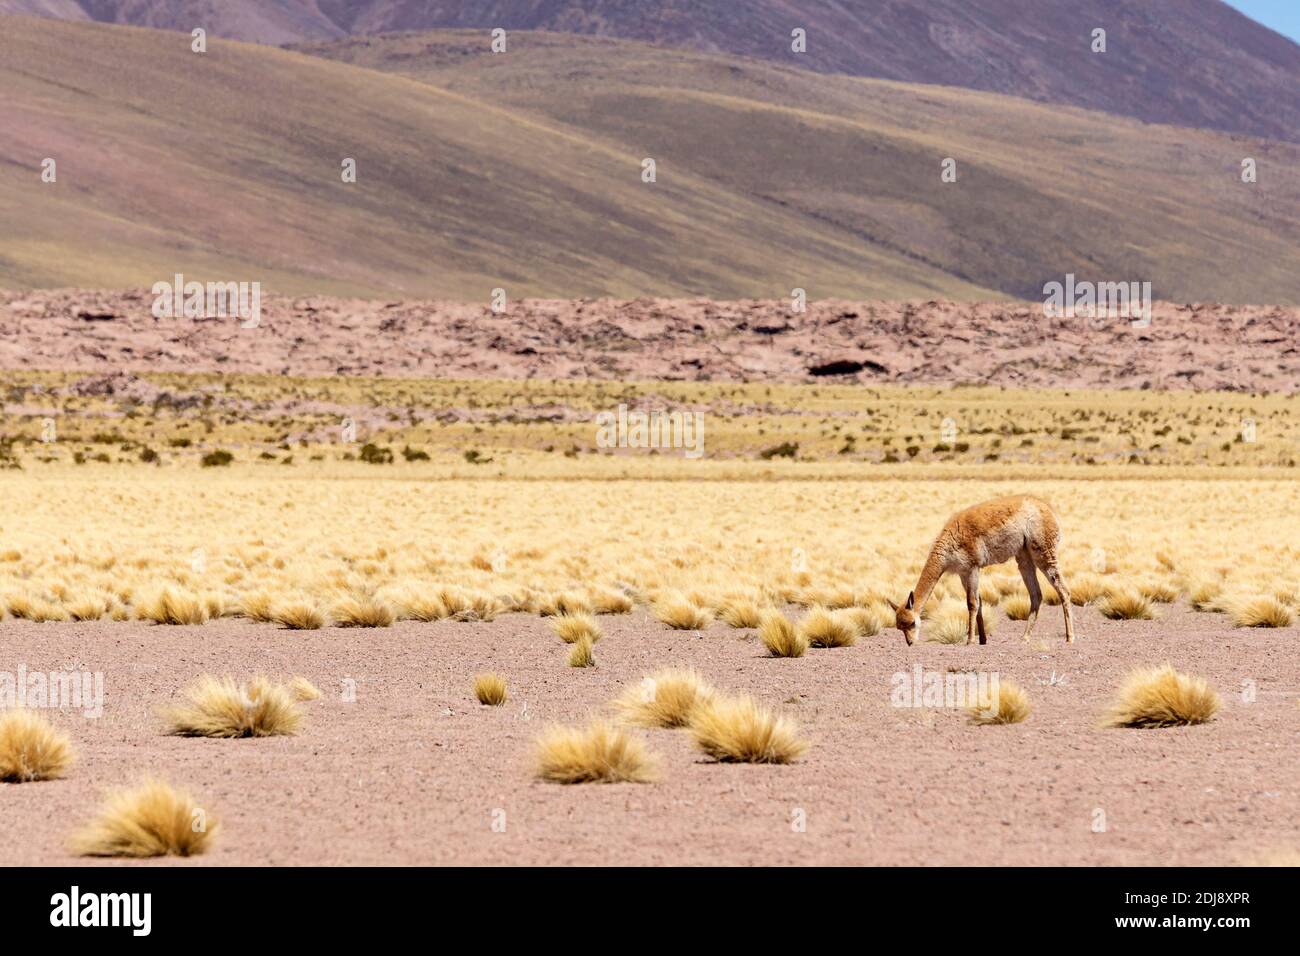 Adult vicuña, Vicugna vicugna, nella zona vulcanica centrale andina, regione Antofagasta, Cile. Foto Stock